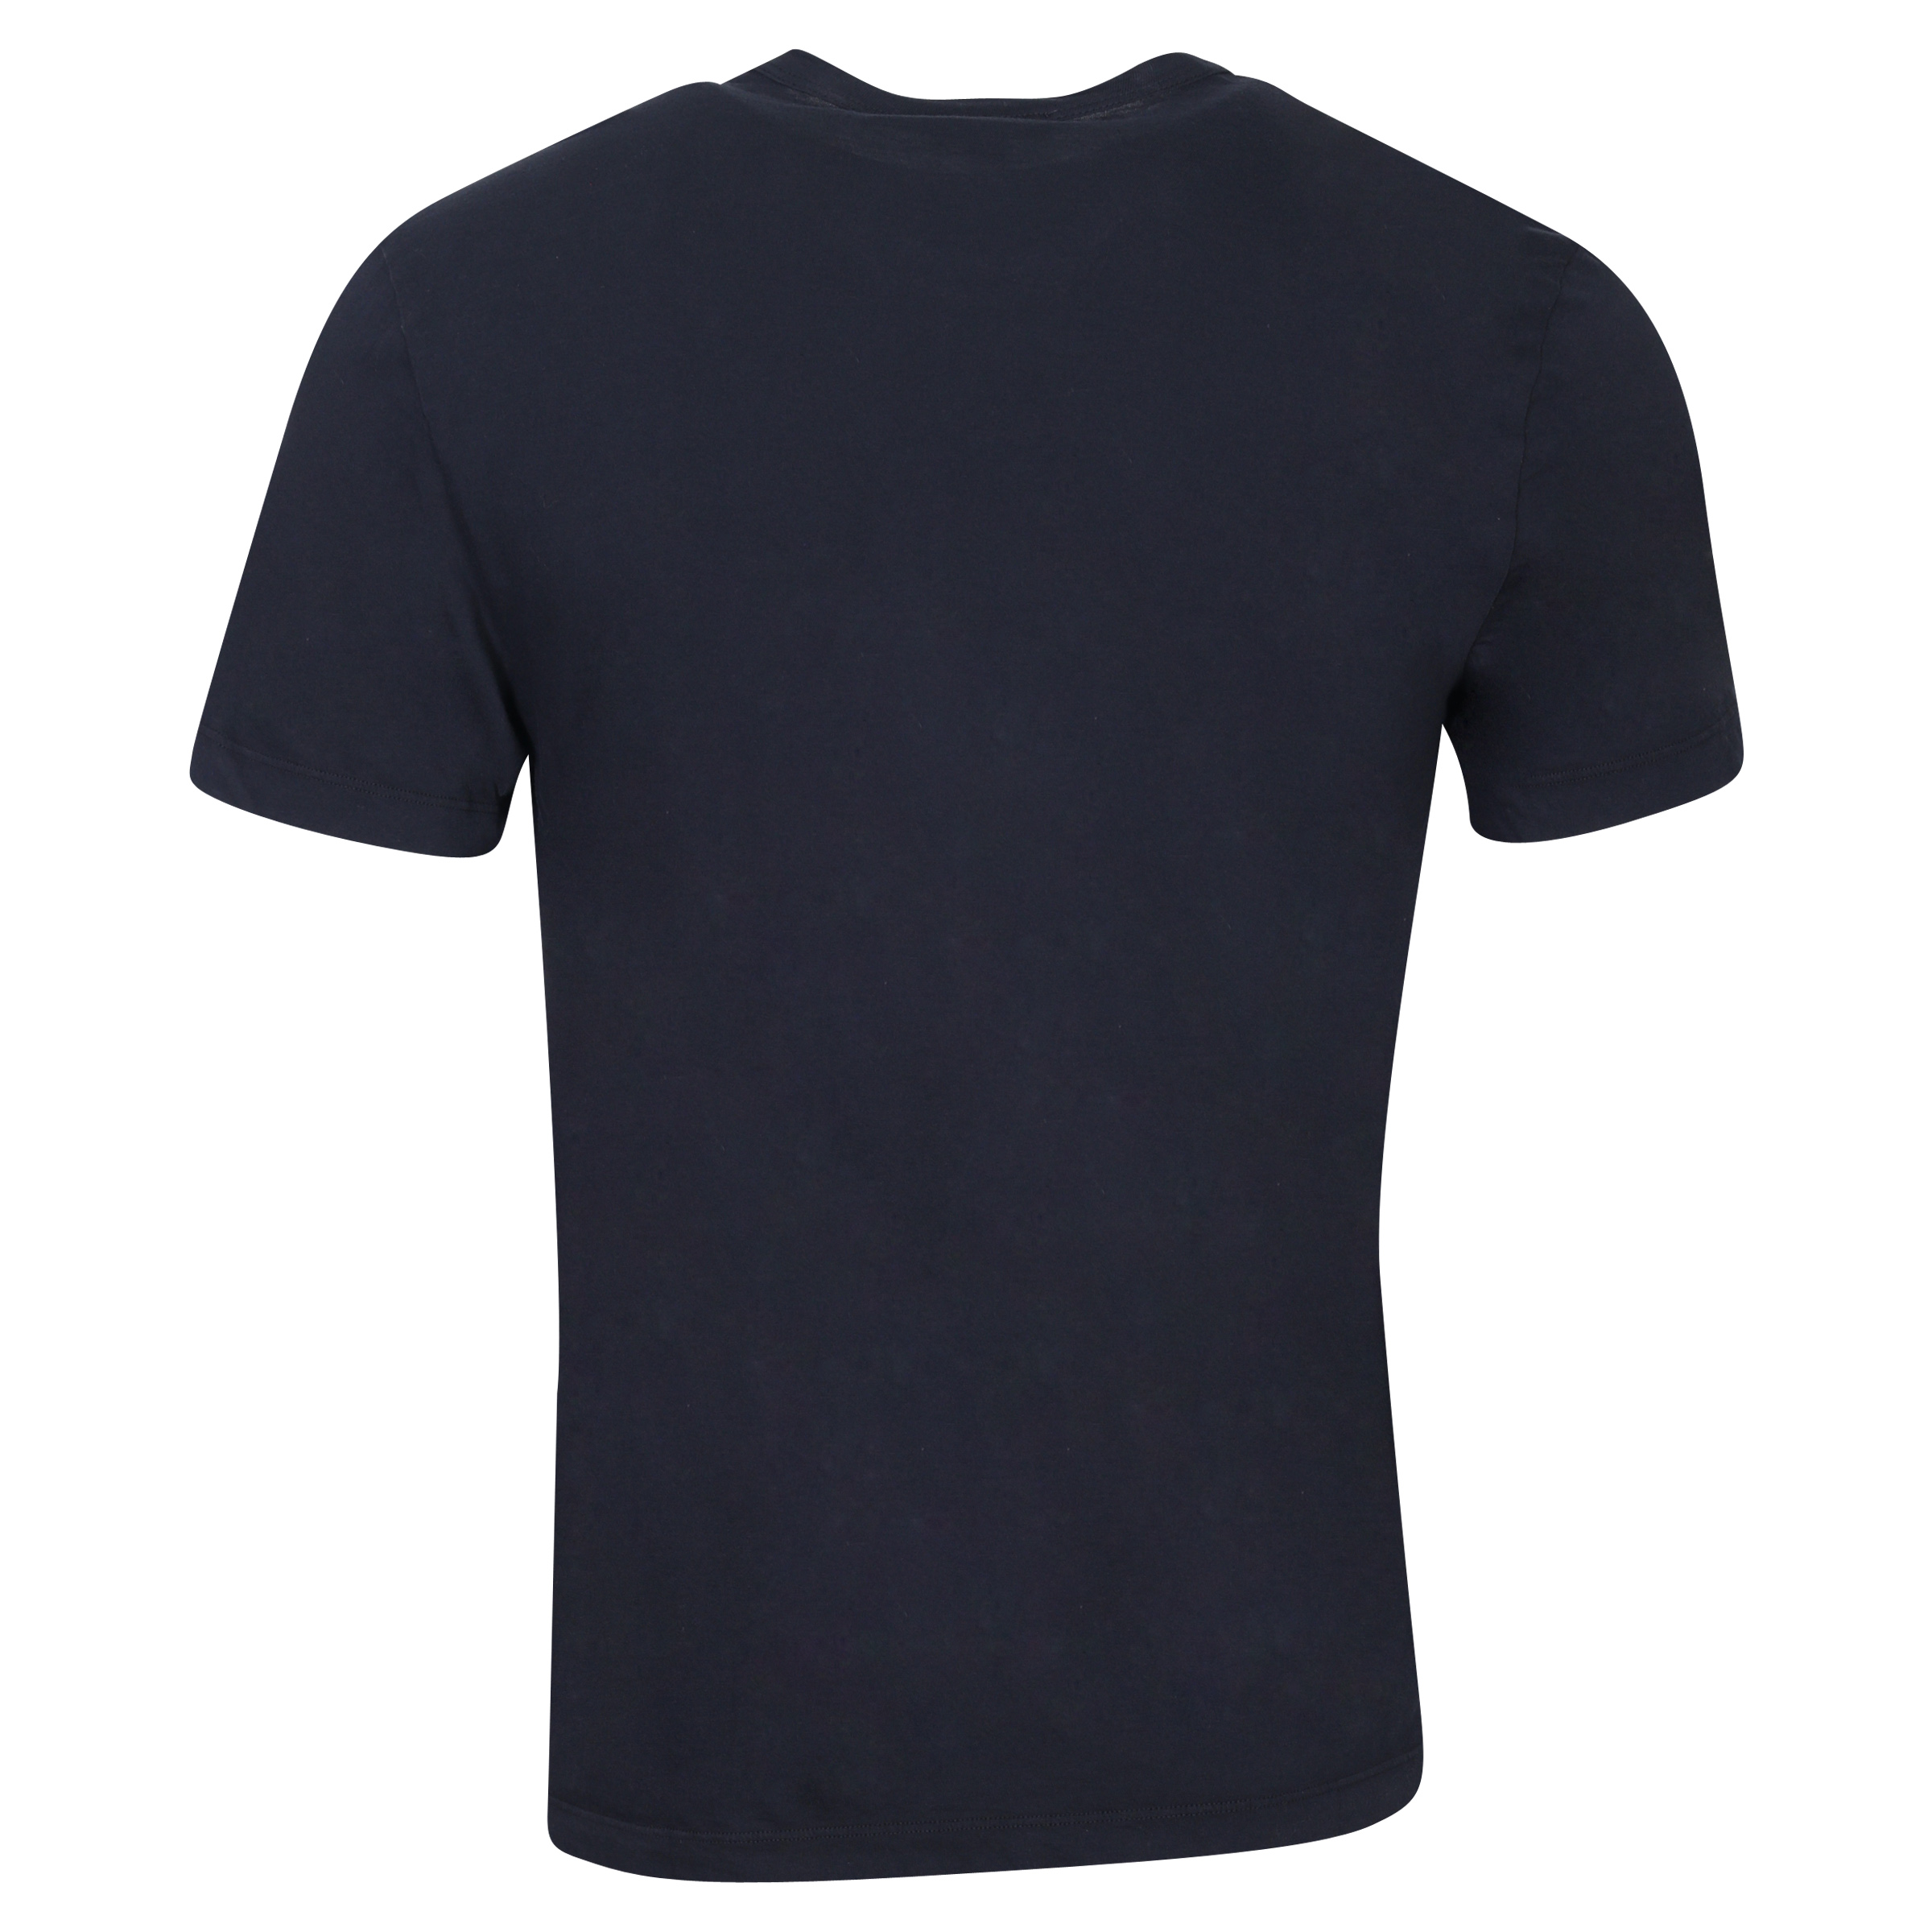 James Perse T-Shirt Crewneck Navy